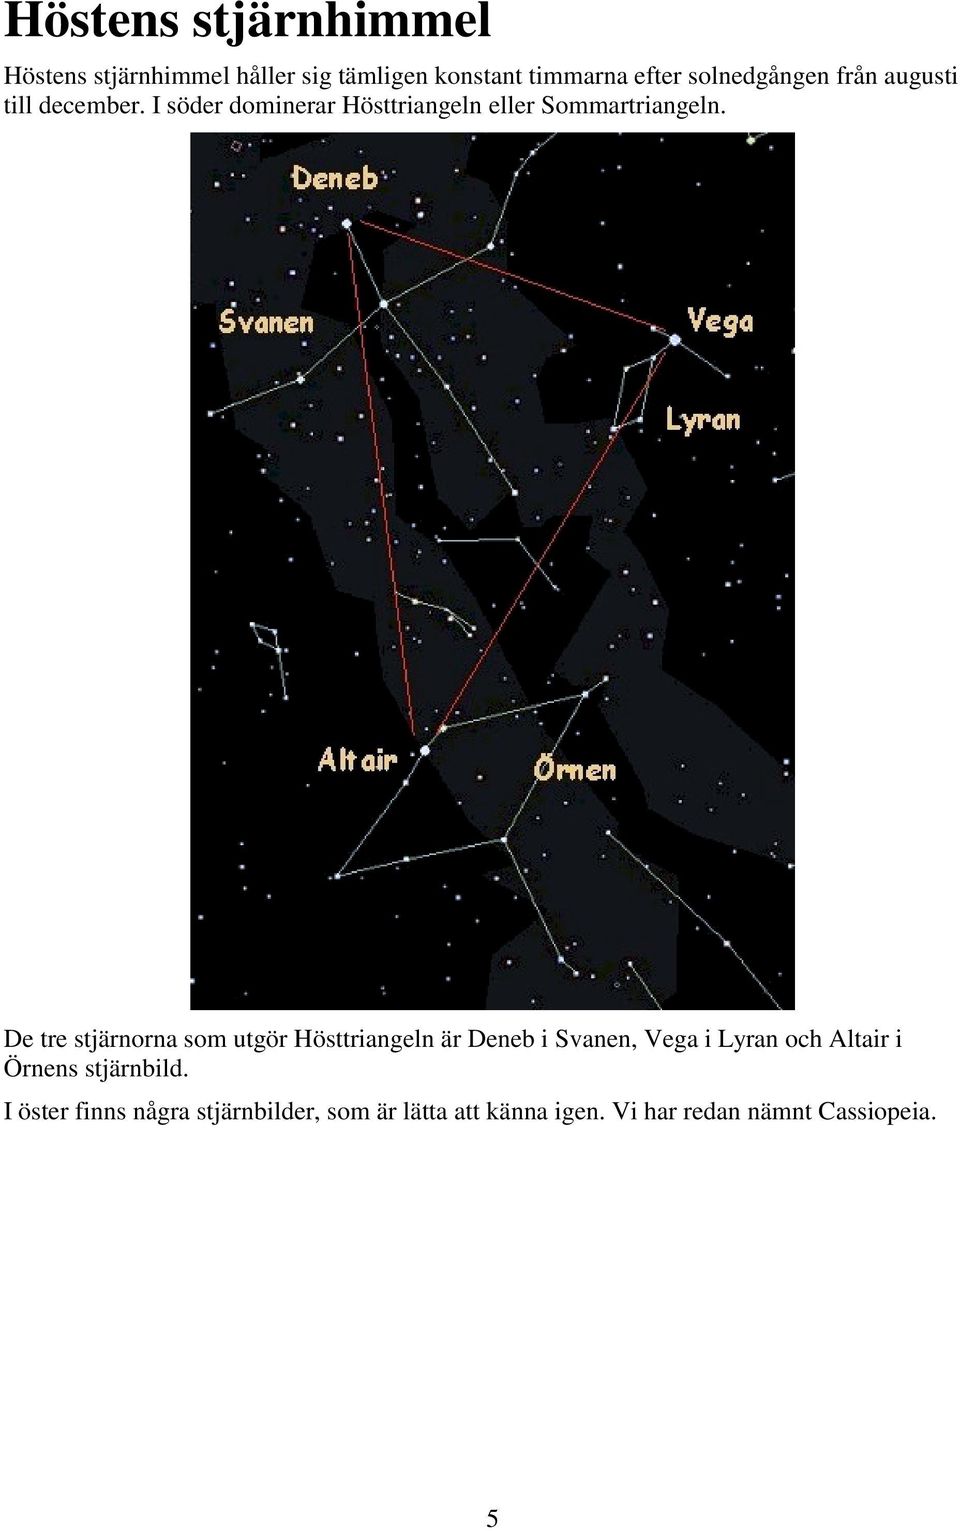 De tre stjärnorna som utgör Hösttriangeln är Deneb i Svanen, Vega i Lyran och Altair i Örnens